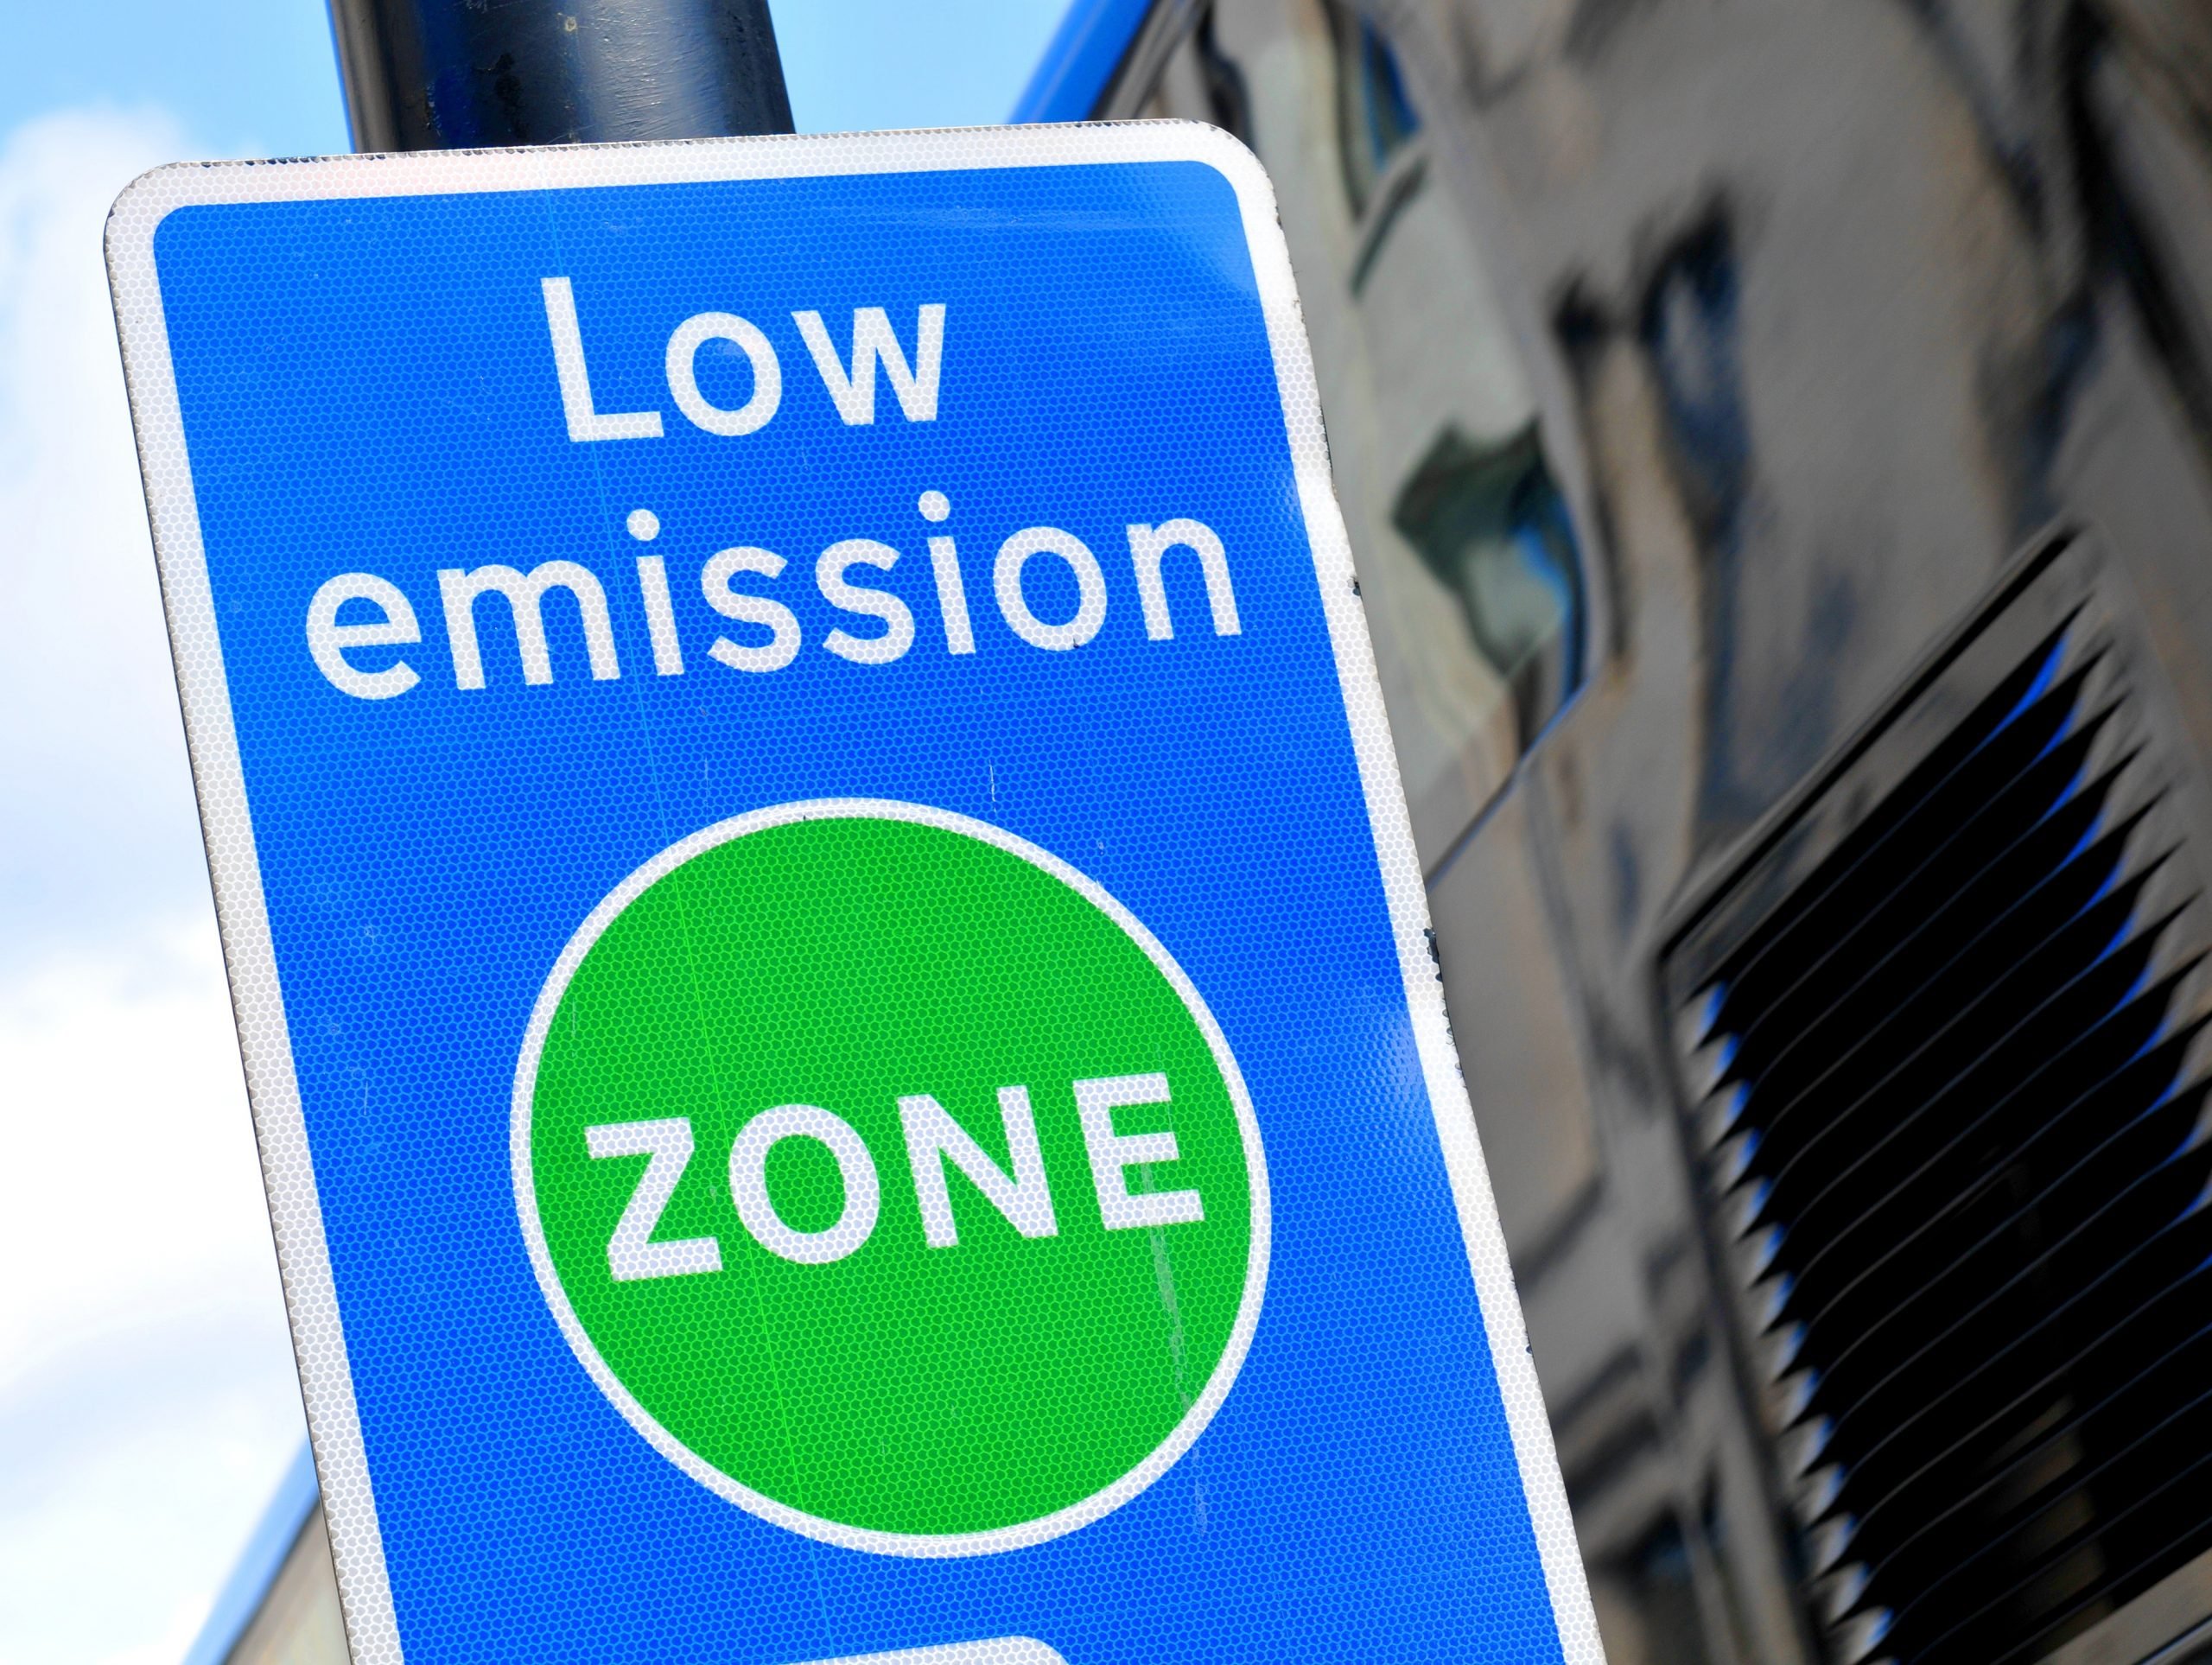 Low Emission Zone Signage